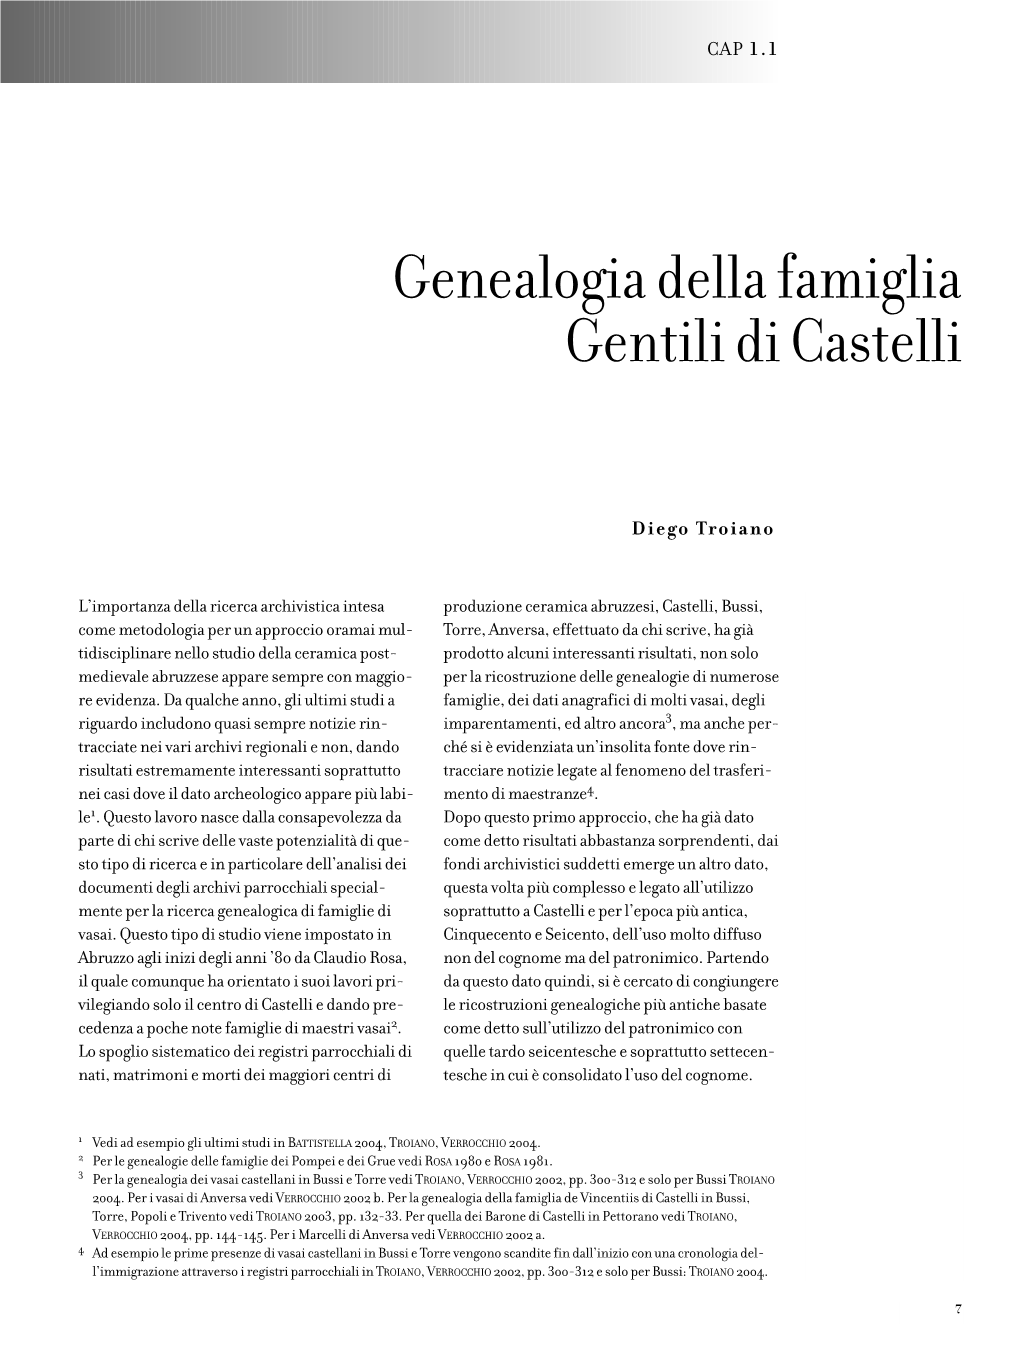 Genealogia Della Famiglia Gentili Di Castelli